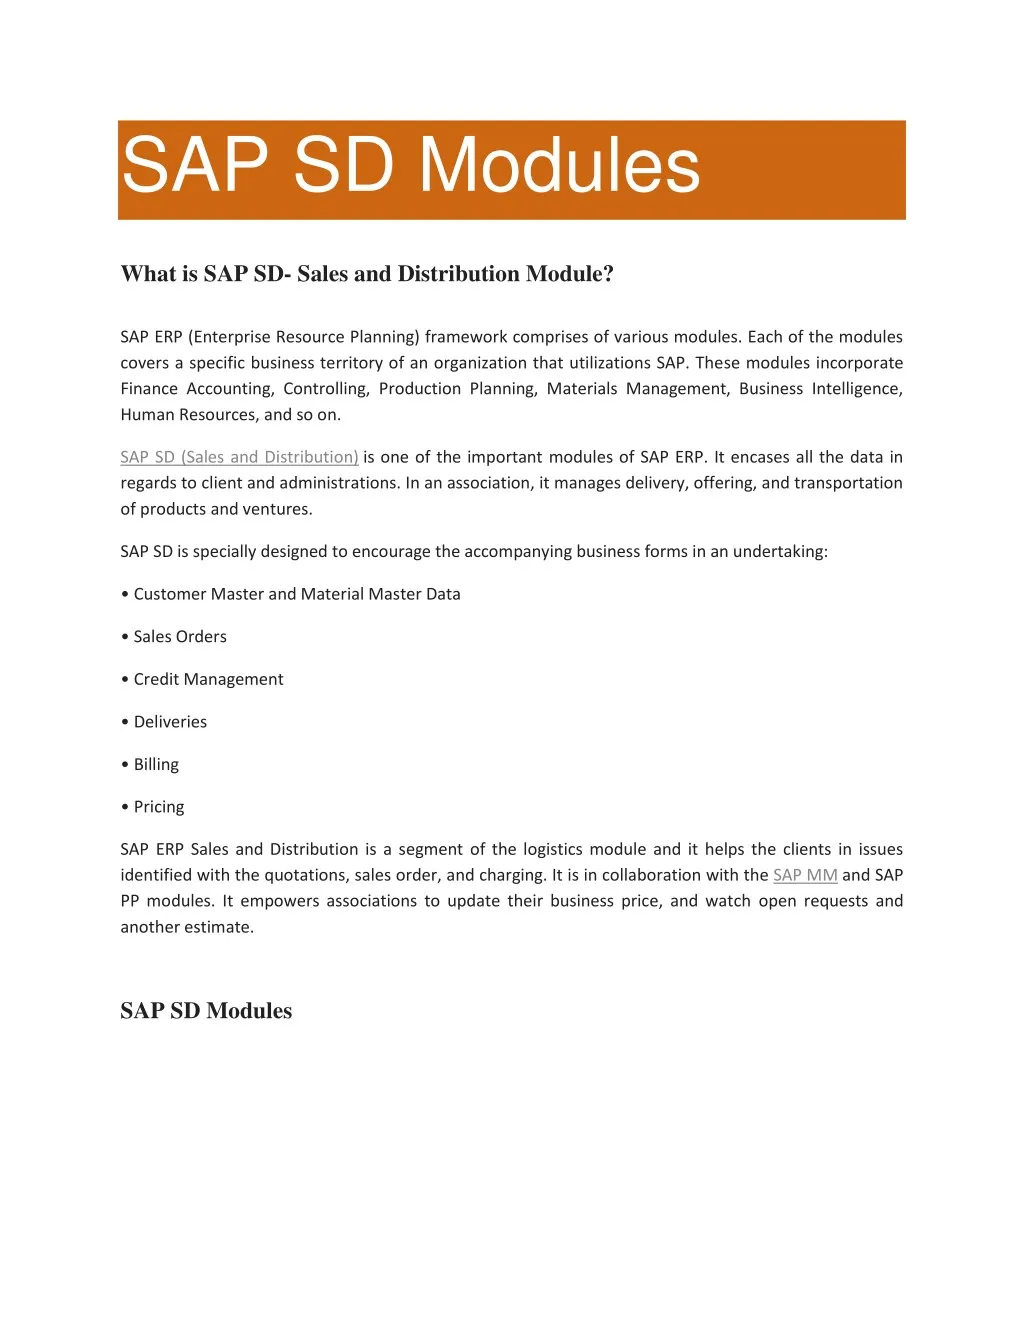 sap sd modules